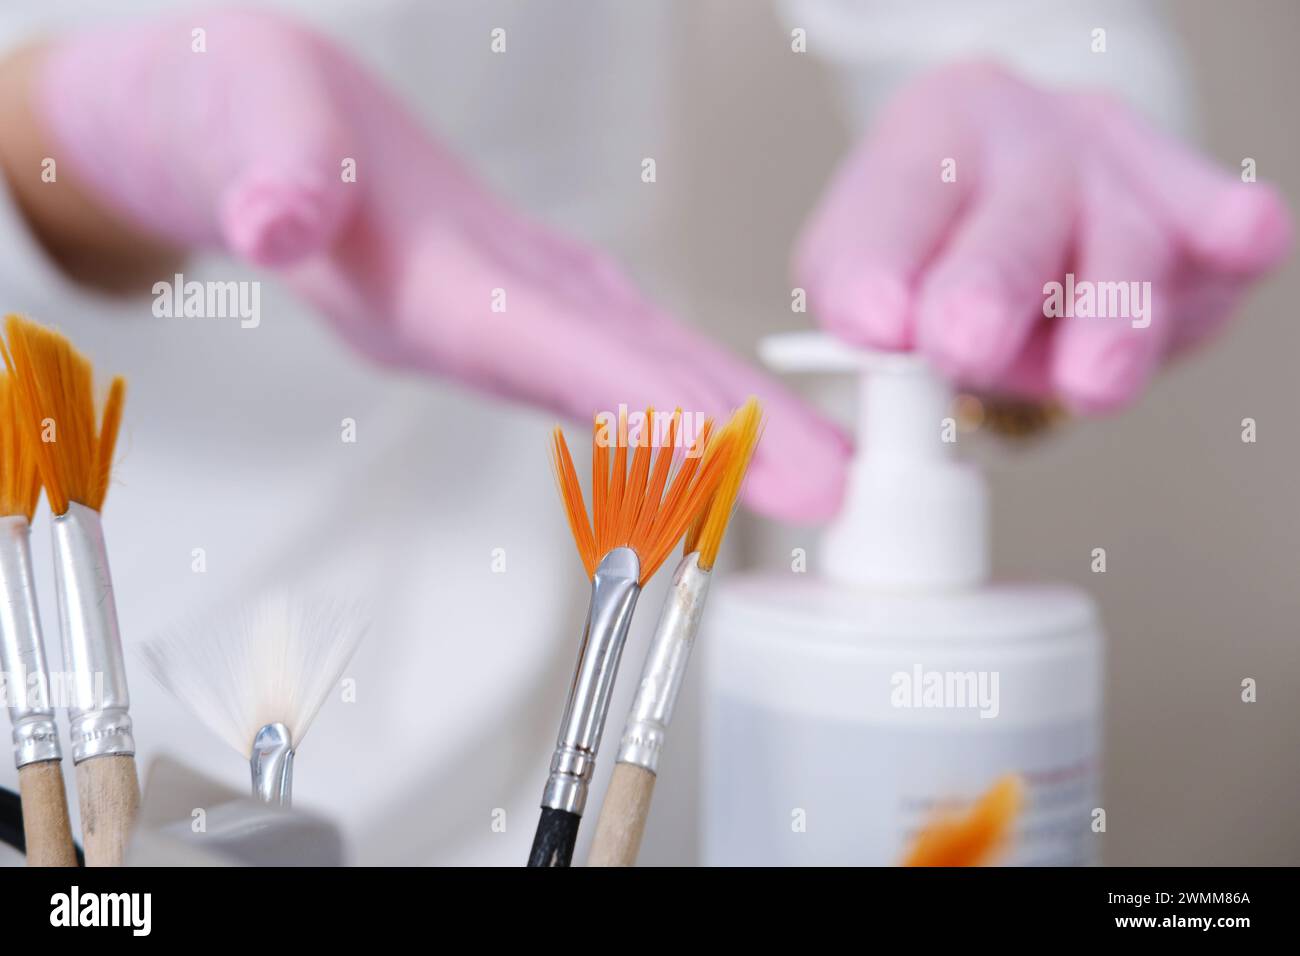 Eine Auswahl von Kosmetikbürsten im Fokus, wobei Hände Kosmetikgel für Gesichtsbehandlungen im Hintergrund abgeben. Stockfoto